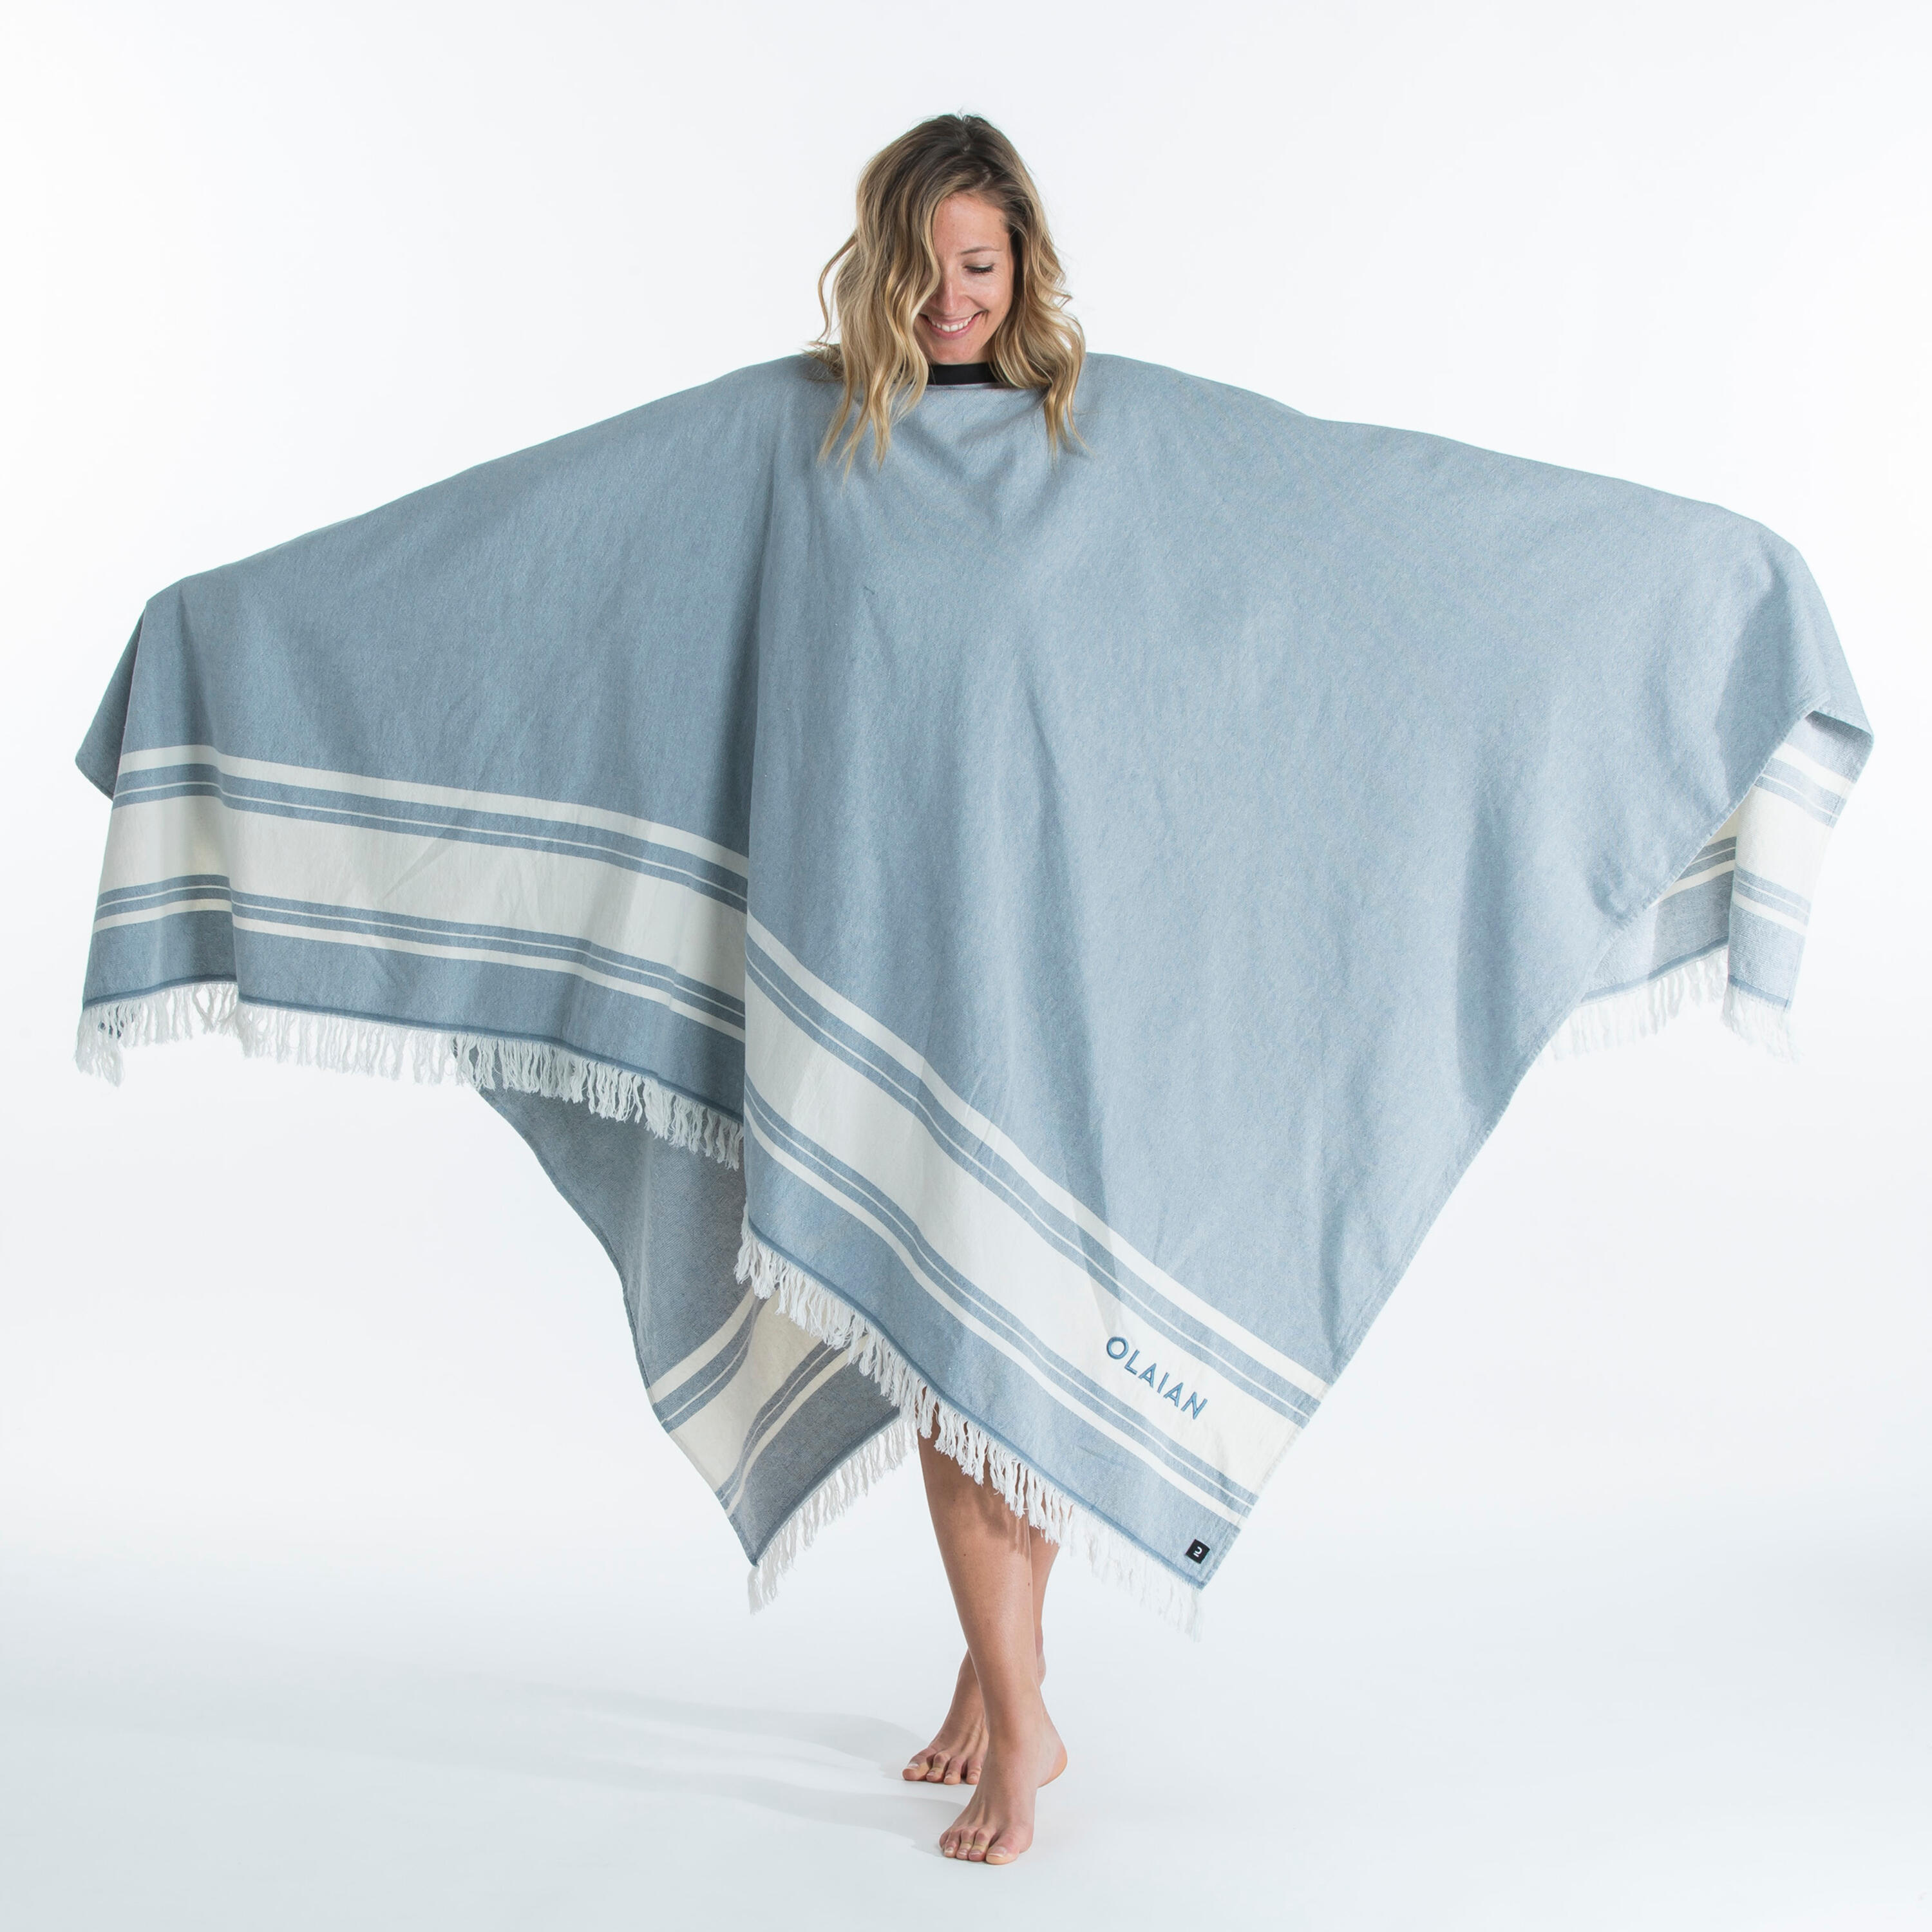 Beach towel poncho 190 x 190 cm - grey blue 13/19